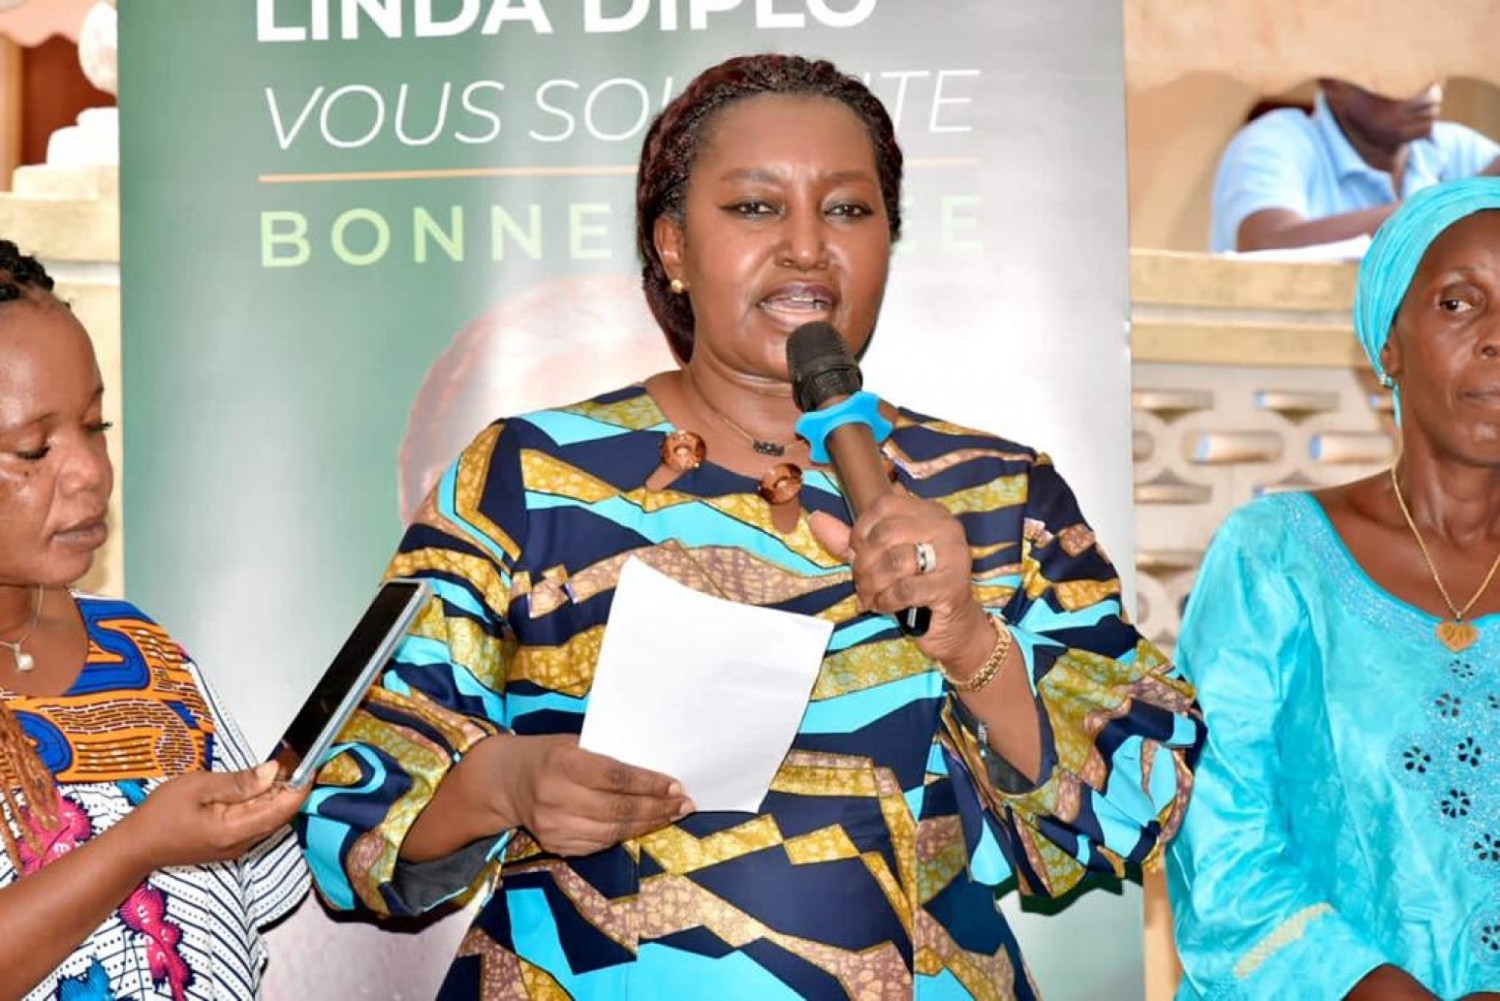 Côte d'Ivoire :  Élection municipale, en attendant le choix du PDCI-RDA à Grand-Bassam, Maitre Linda Diplo confie sa candidature à la jeunesse et aux femmes